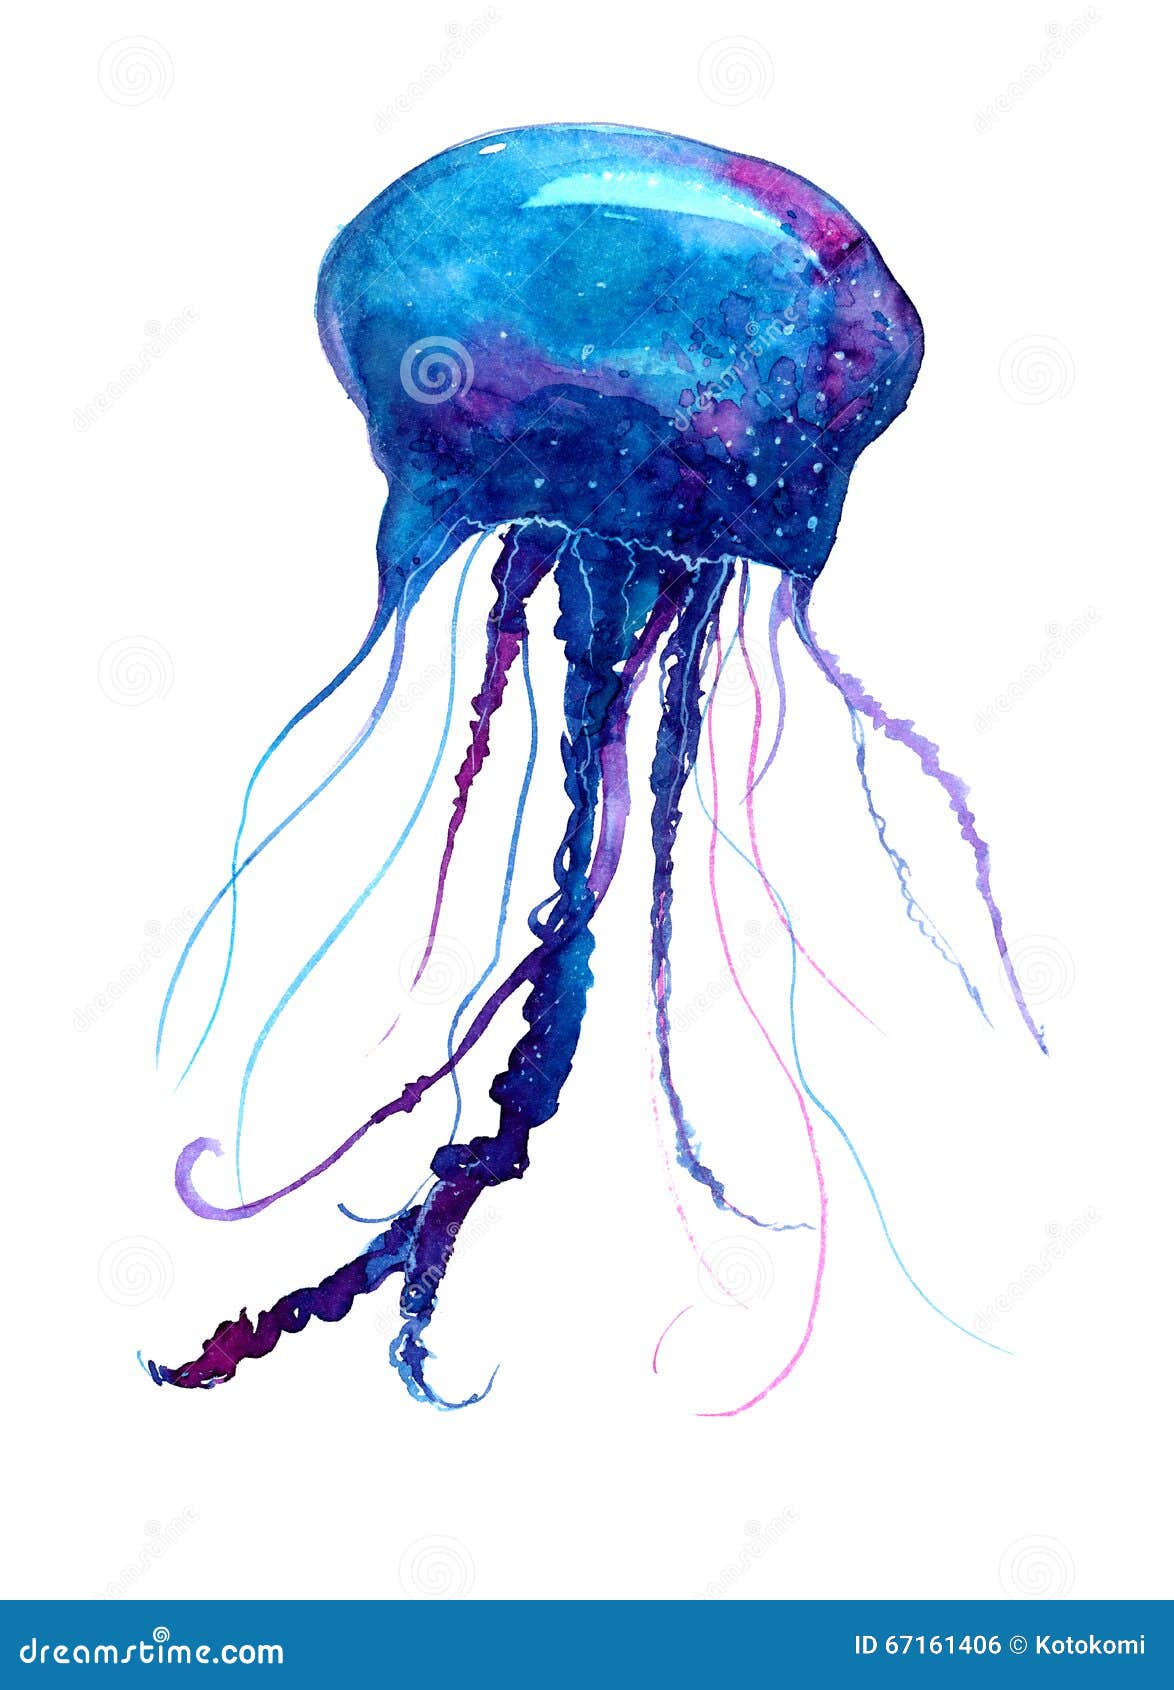 Explore the 46 Best Jellyfish Tattoo Ideas 2018  Tattoodo